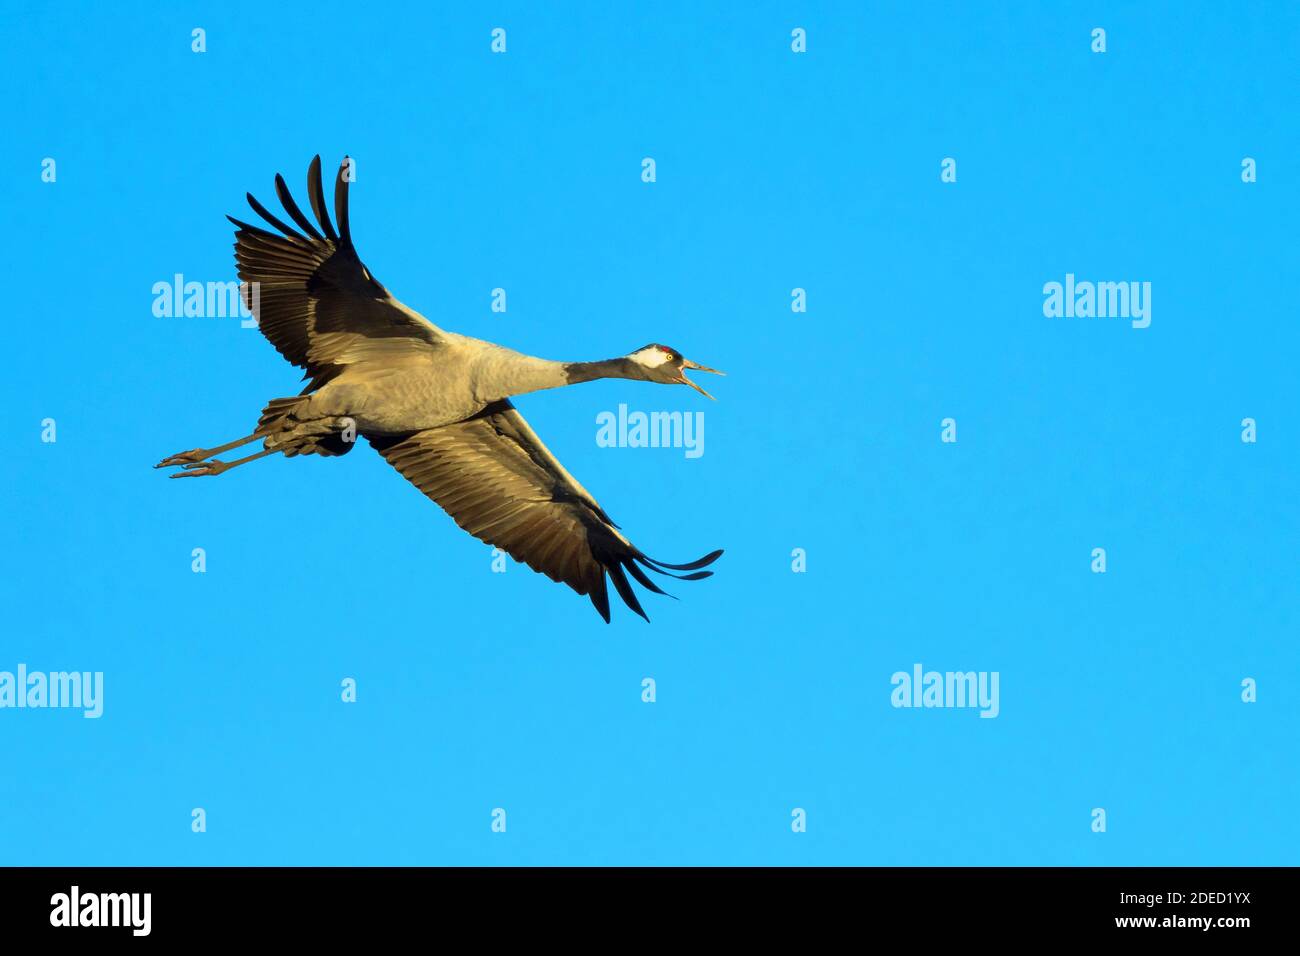 Common crane, Eurasian Crane (Grus grus), in flight in the blue sky, Sweden, Vaestergoetland, Falkoeping Stock Photo